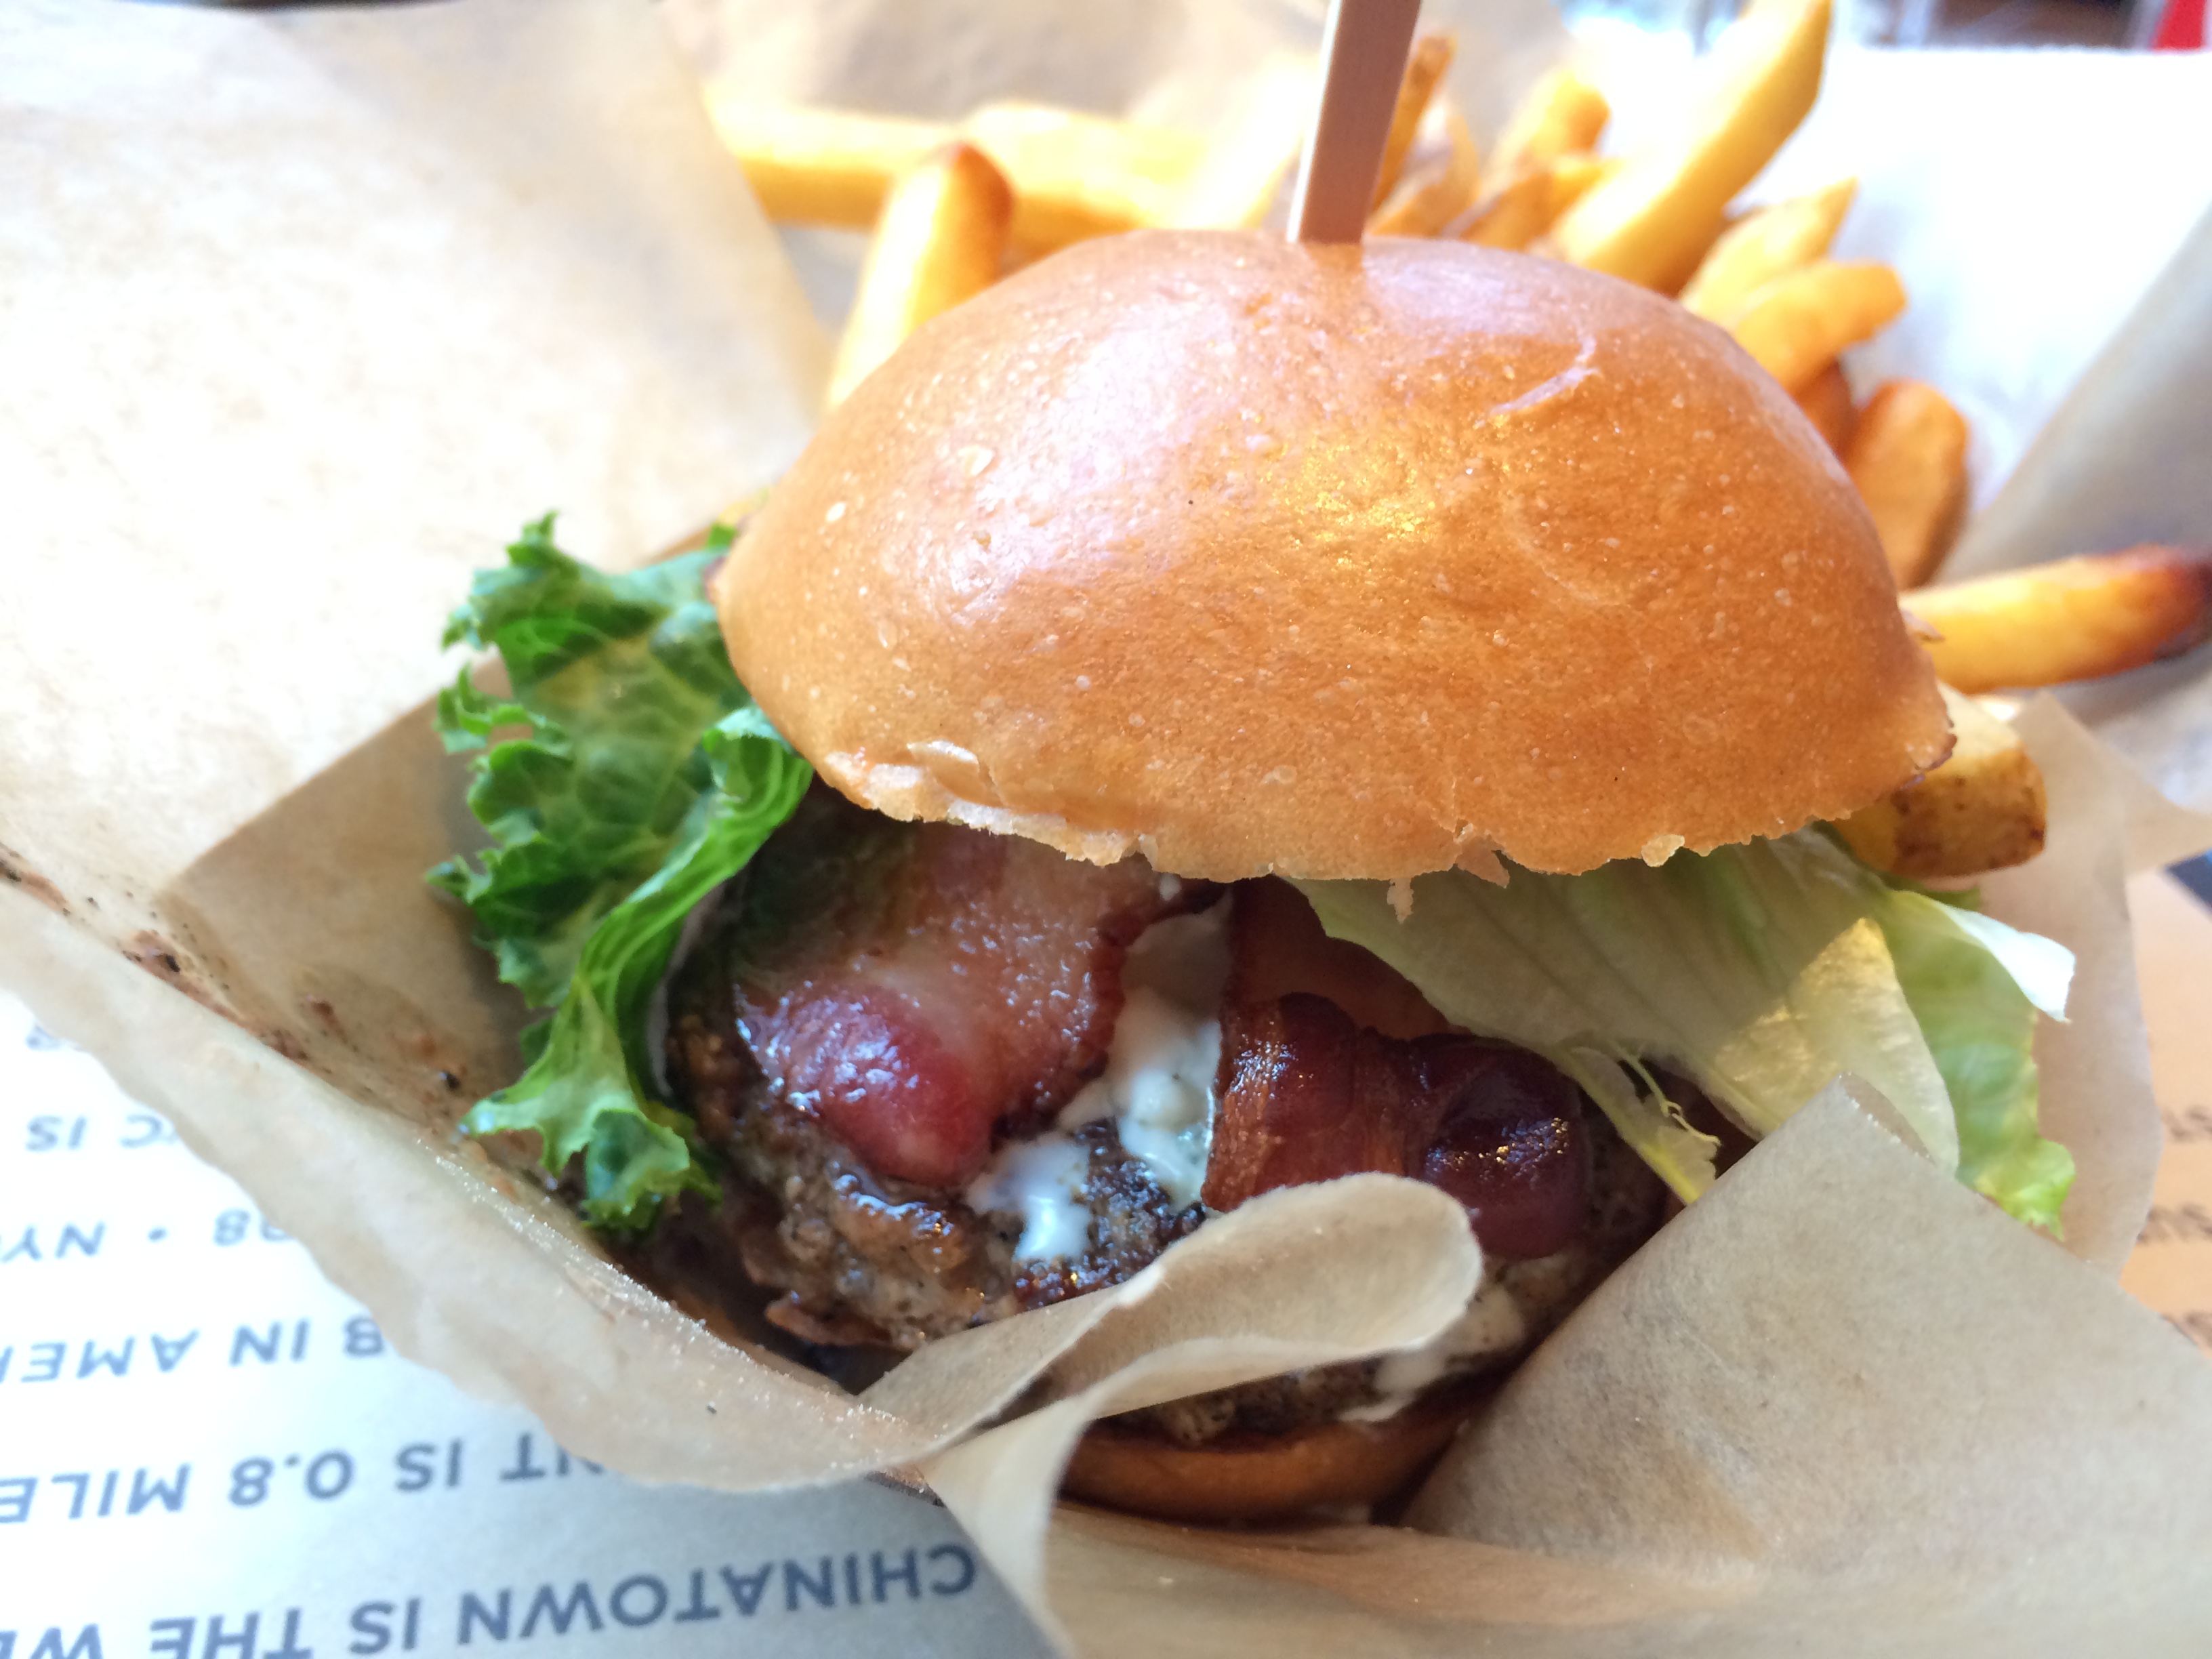 Schweid-and-Sons-Bubbly-NY-Burger-Co-2015-NY-Burger-Week-2355